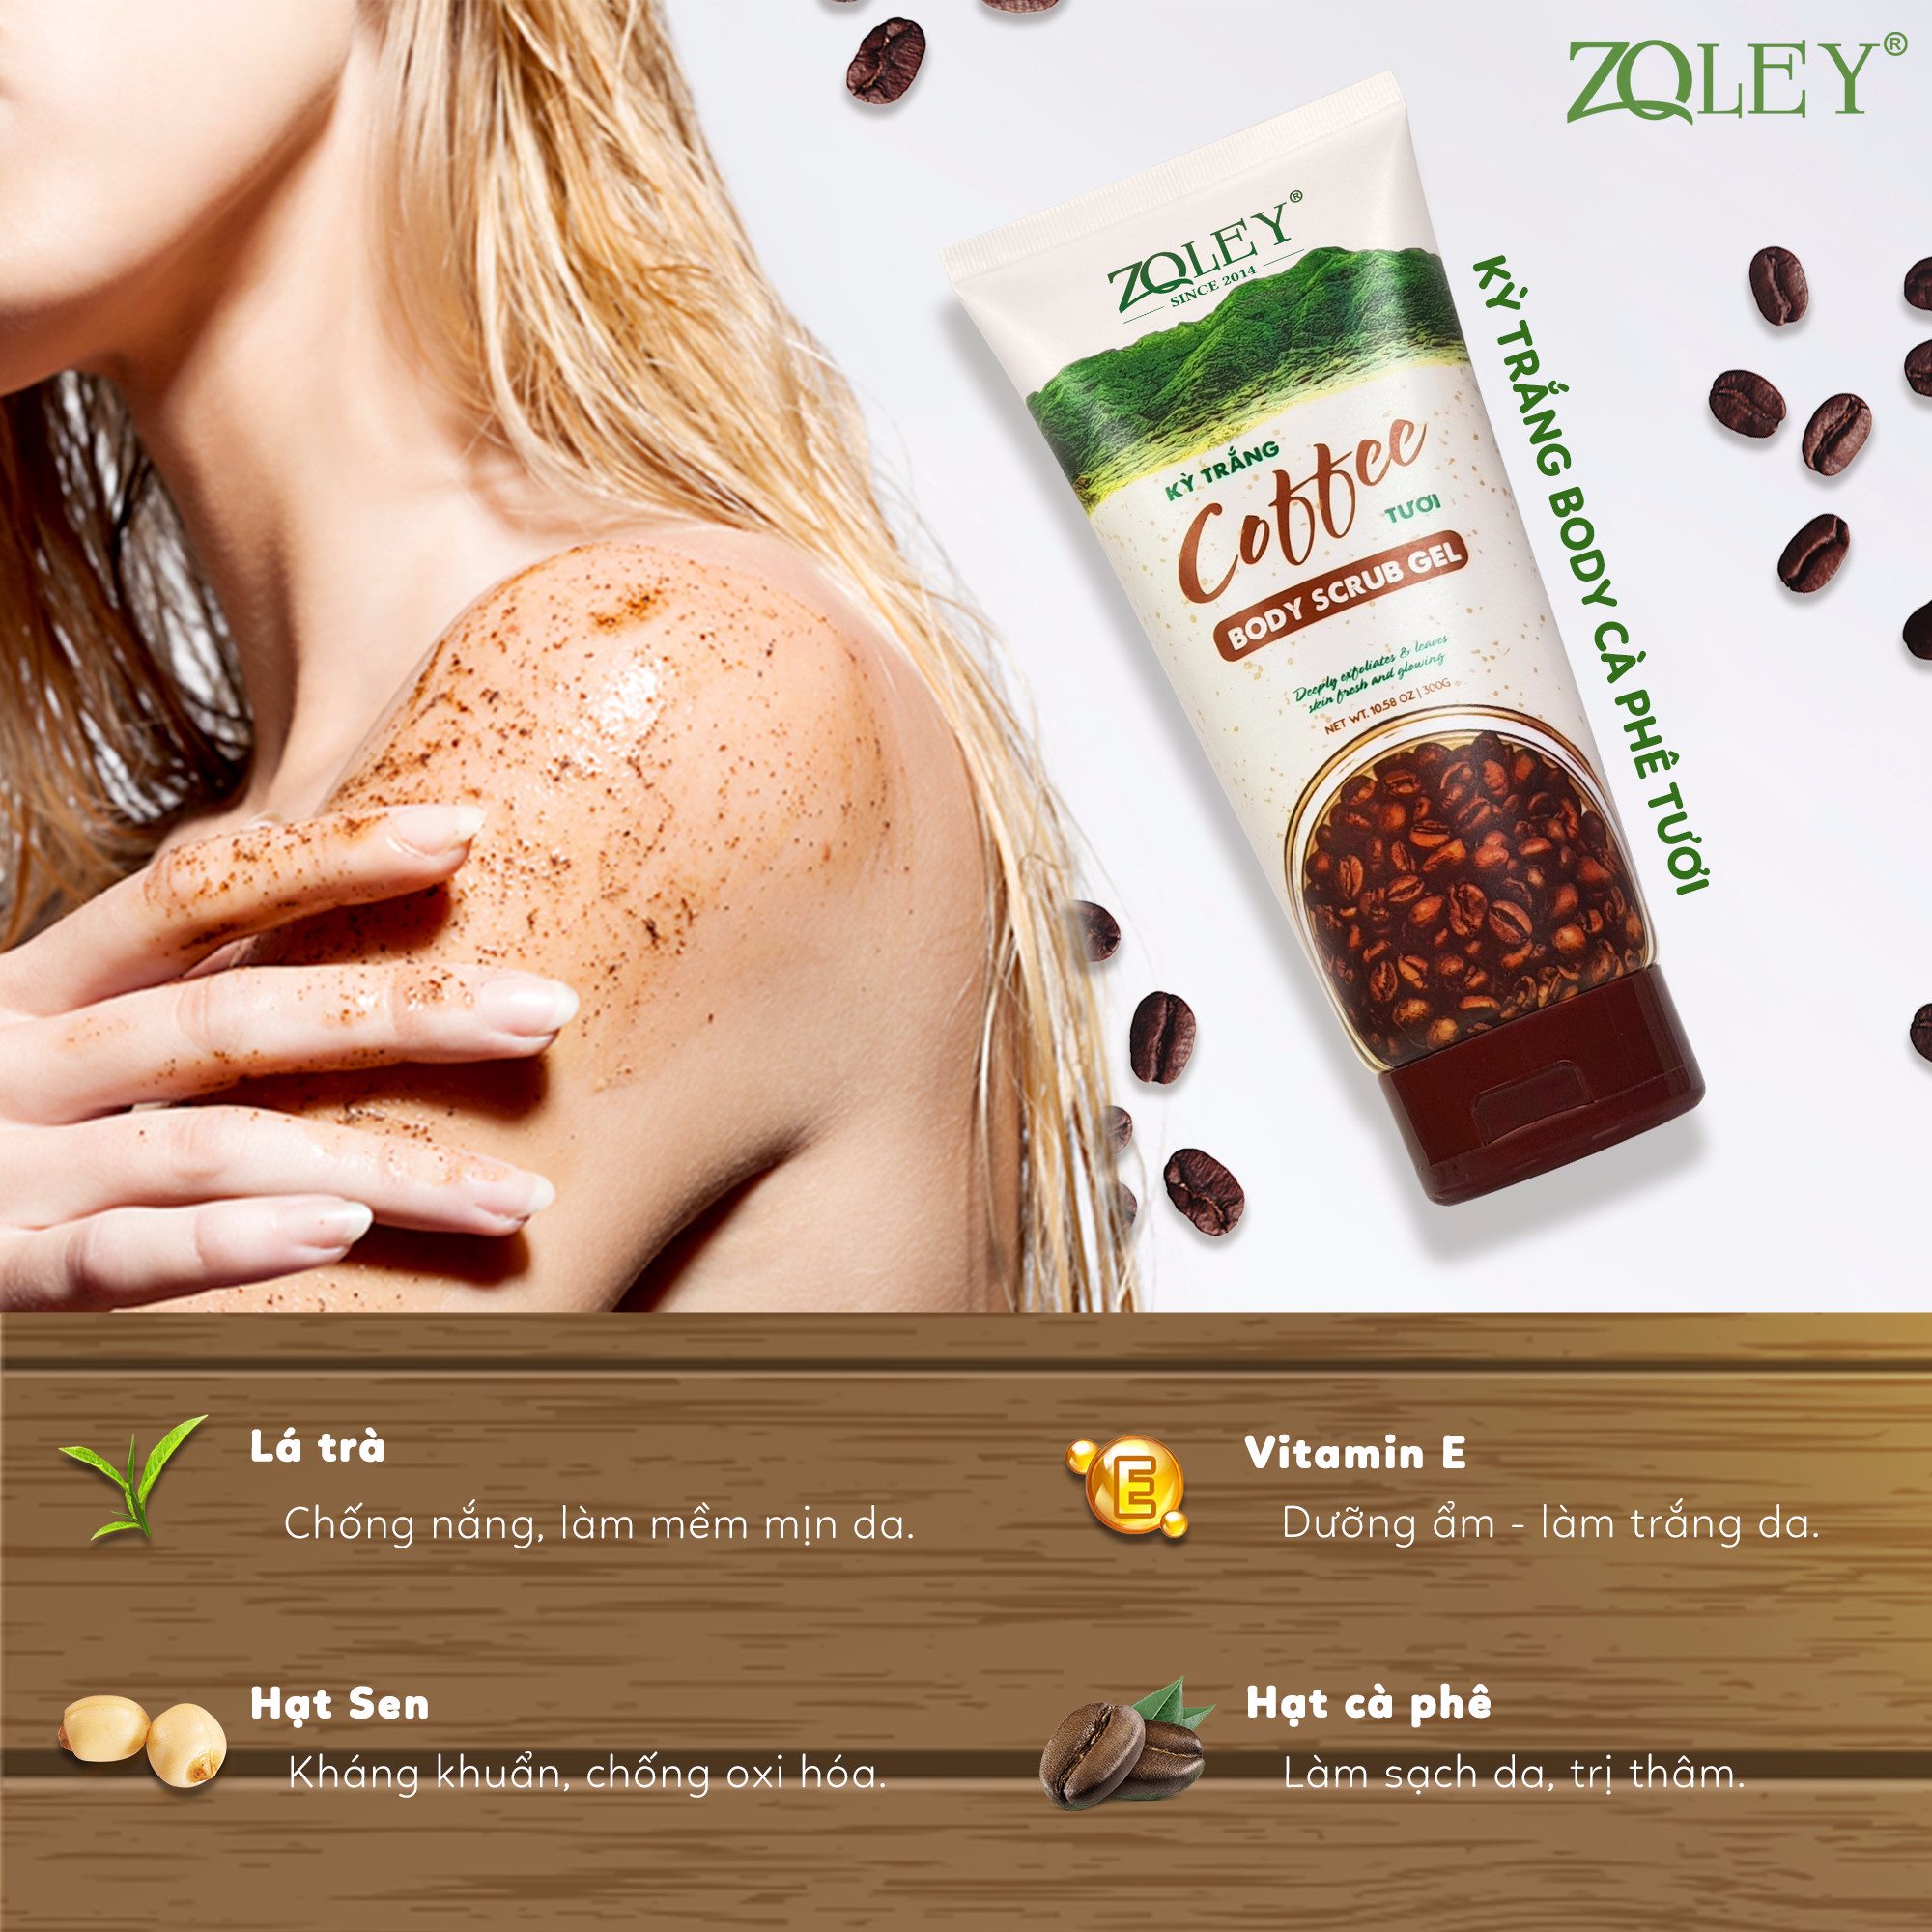 Biến hoá làn da khô sần trở nên mịn màng tức thì với tẩy tế bào Coffee Zoley